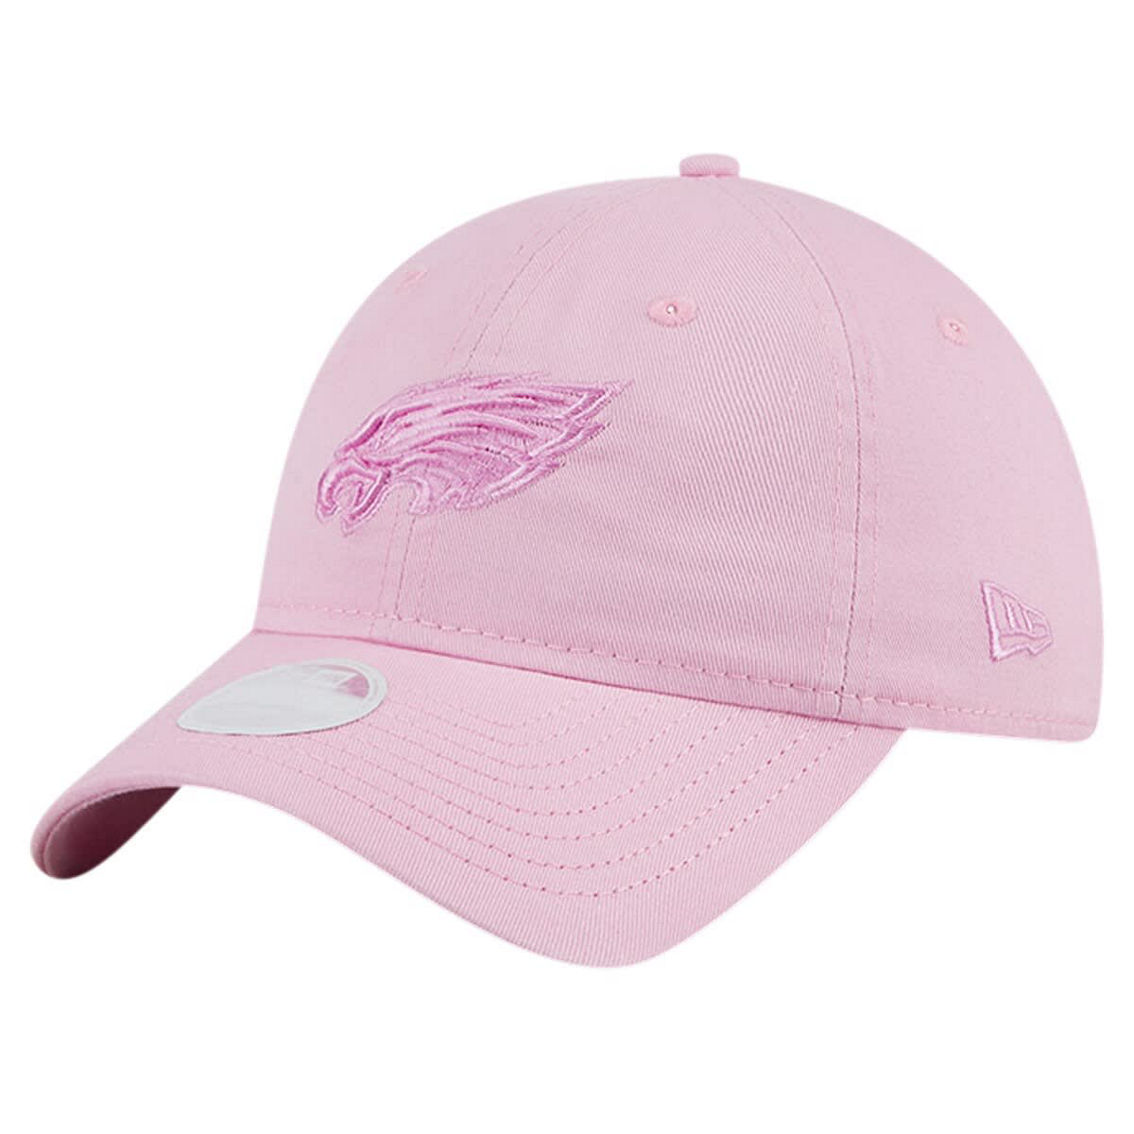 New Era Women's Pink Philadelphia Eagles Color Pack 9TWENTY Adjustable Hat - Image 2 of 4